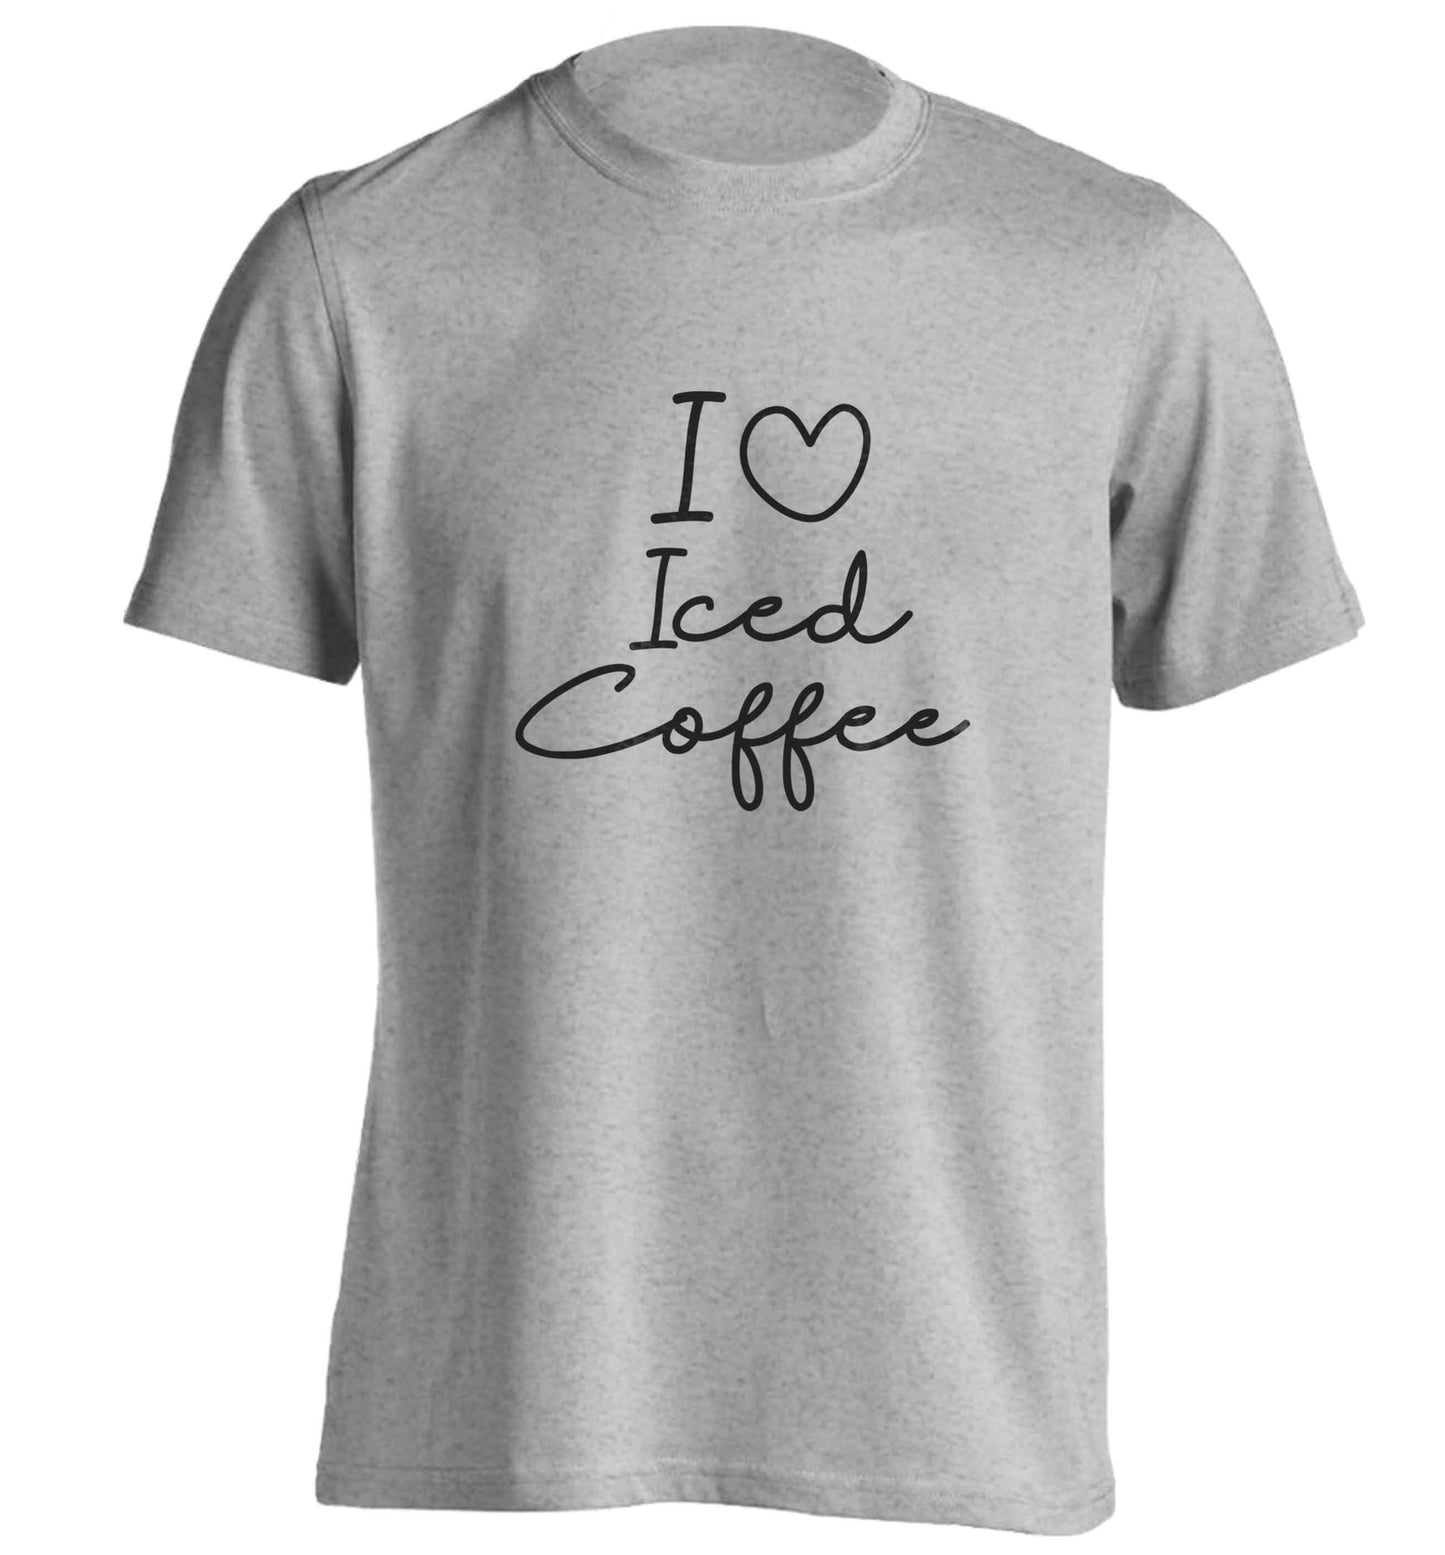 I love iced coffee adults unisex grey Tshirt 2XL